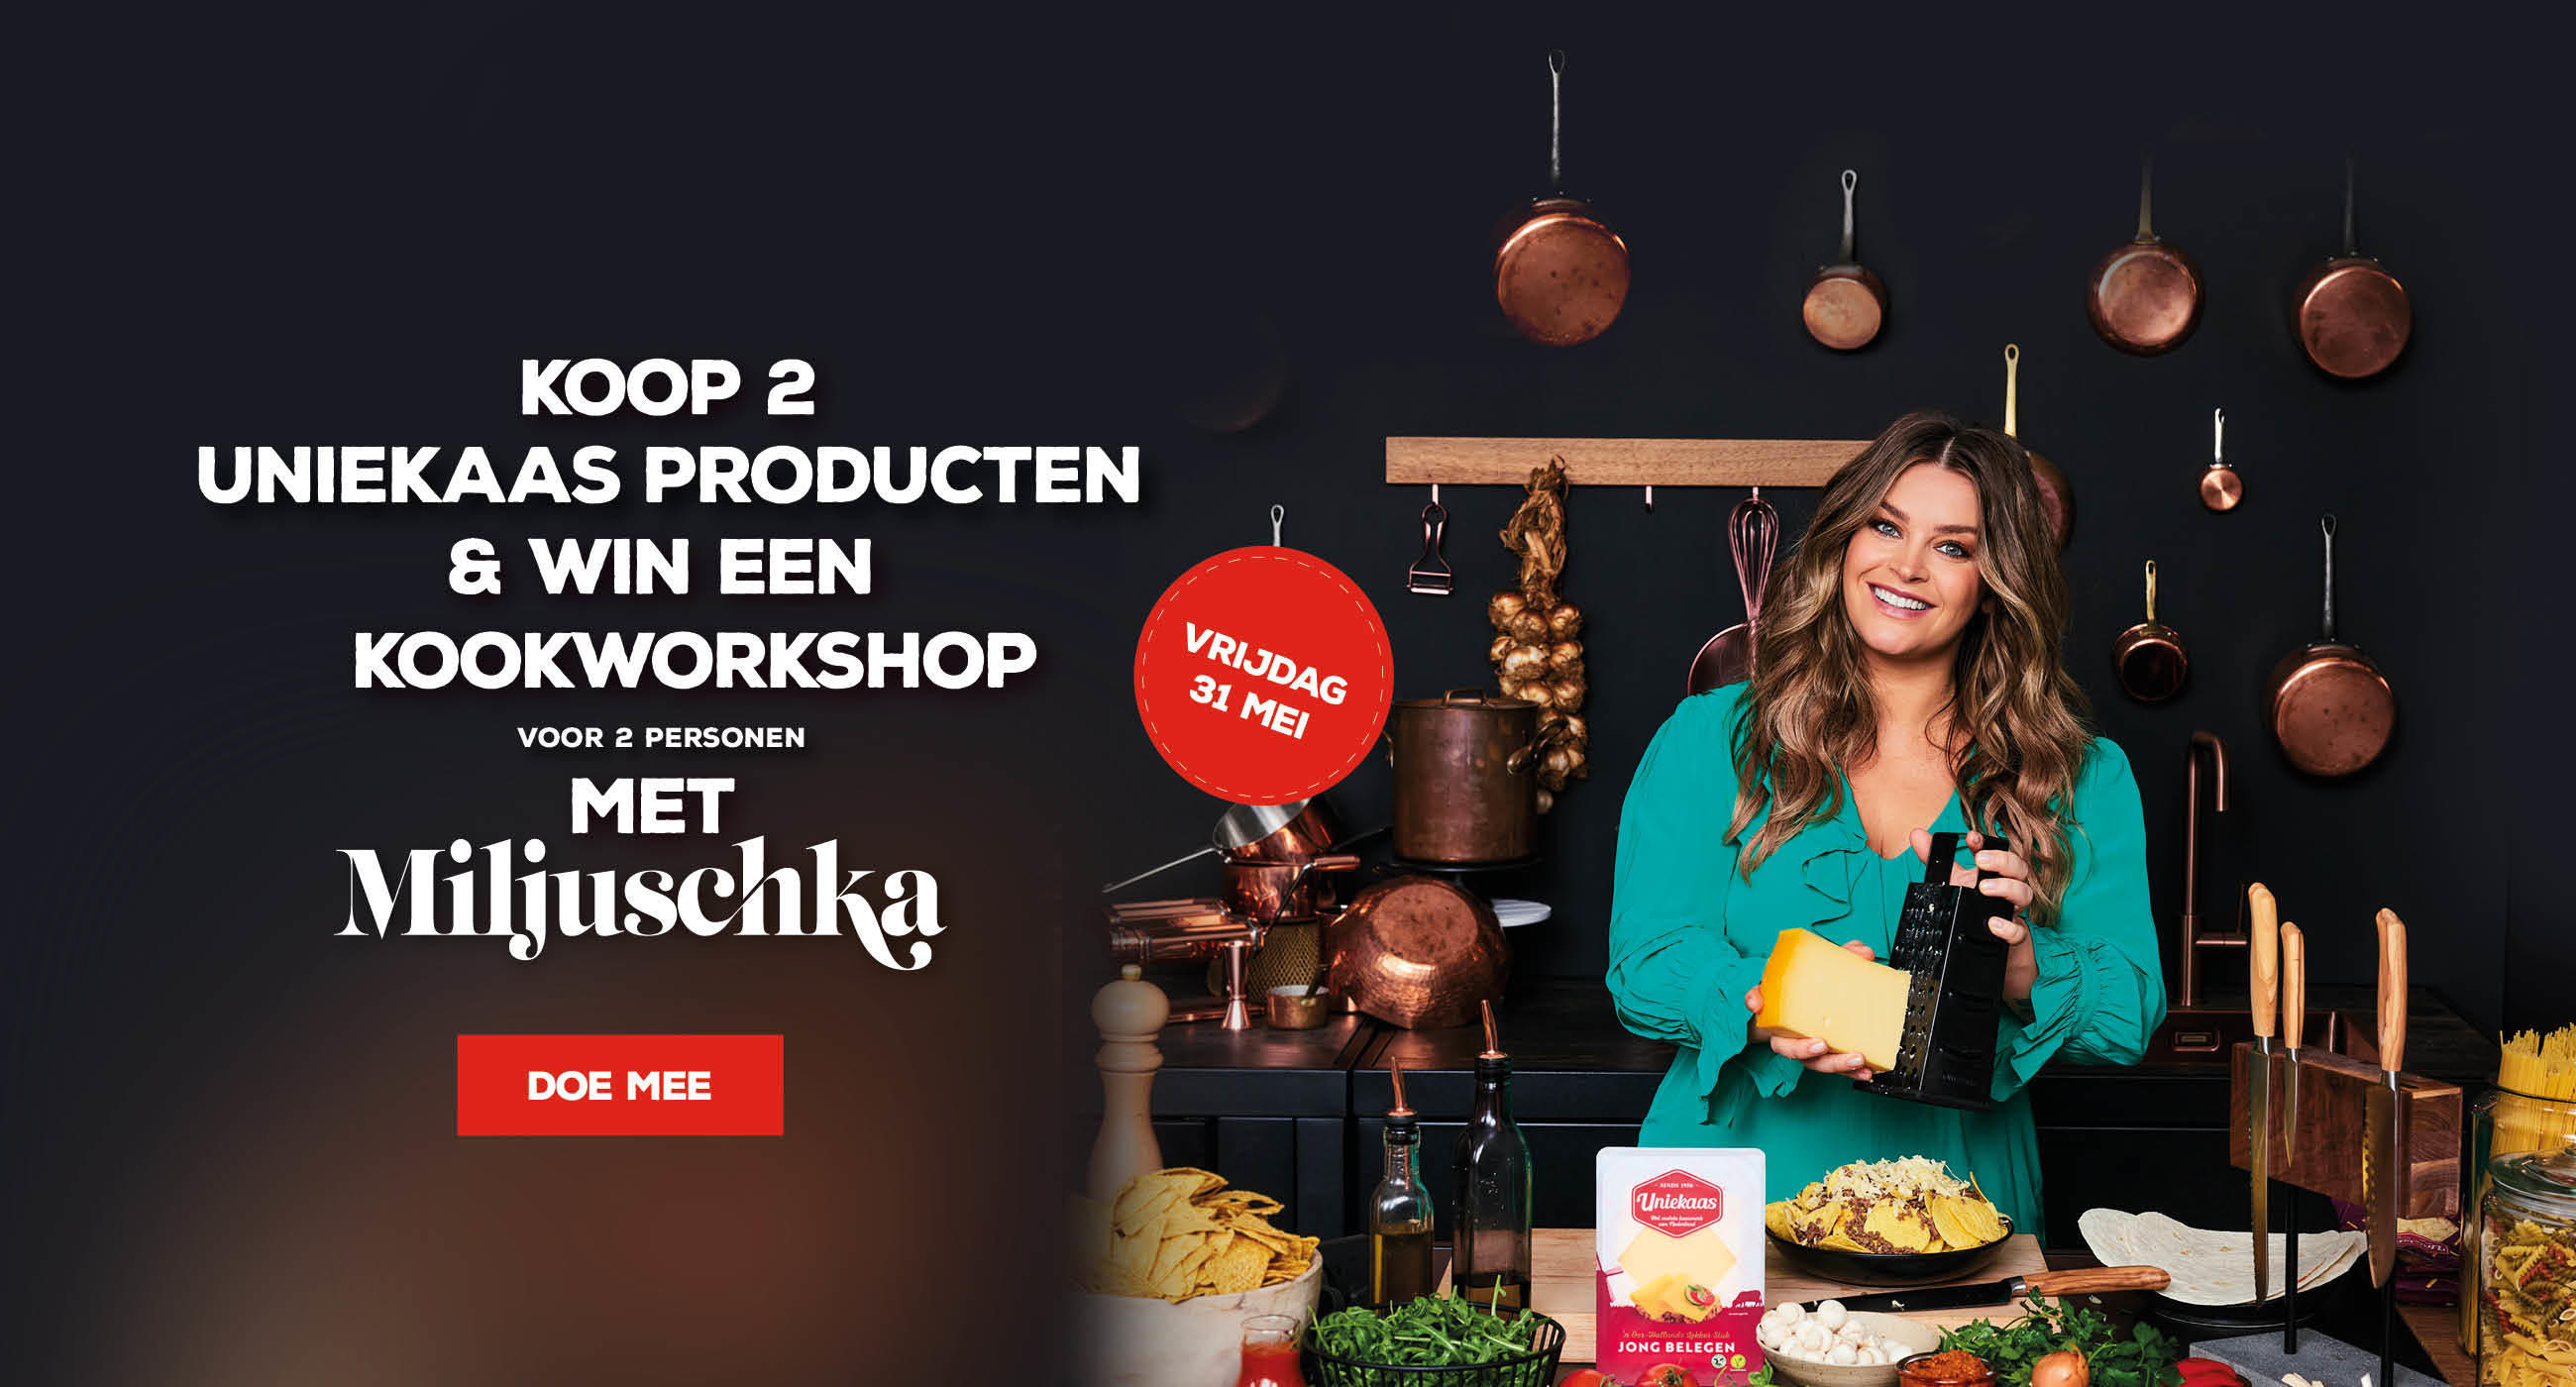 Koop & Win een kookworkshop met Miljuschka